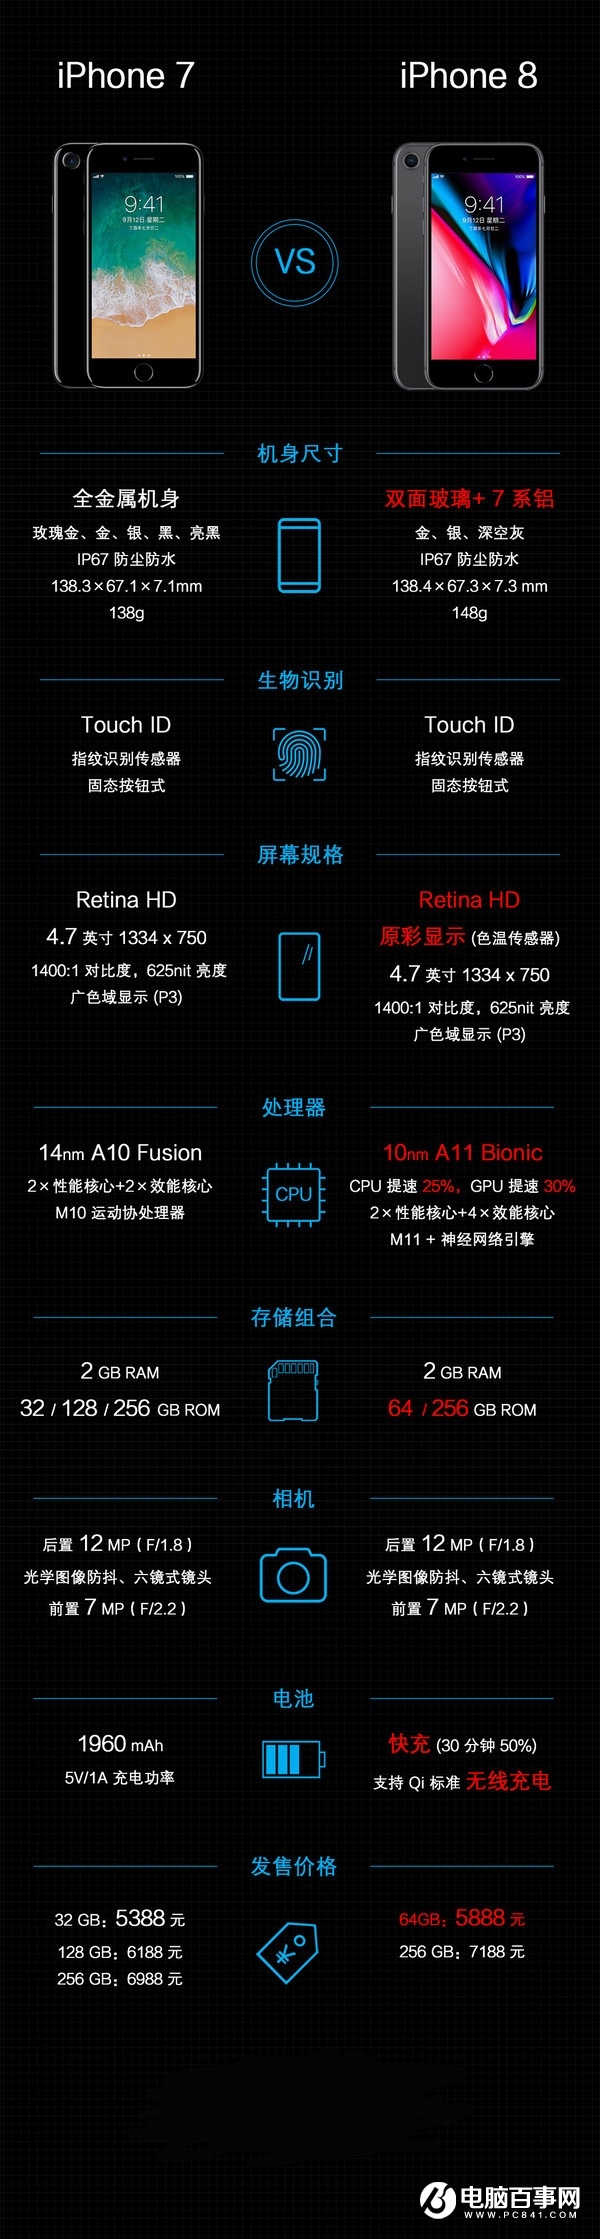 iPhone8对比iPhone7，一图看懂iPhone8升级了哪些？